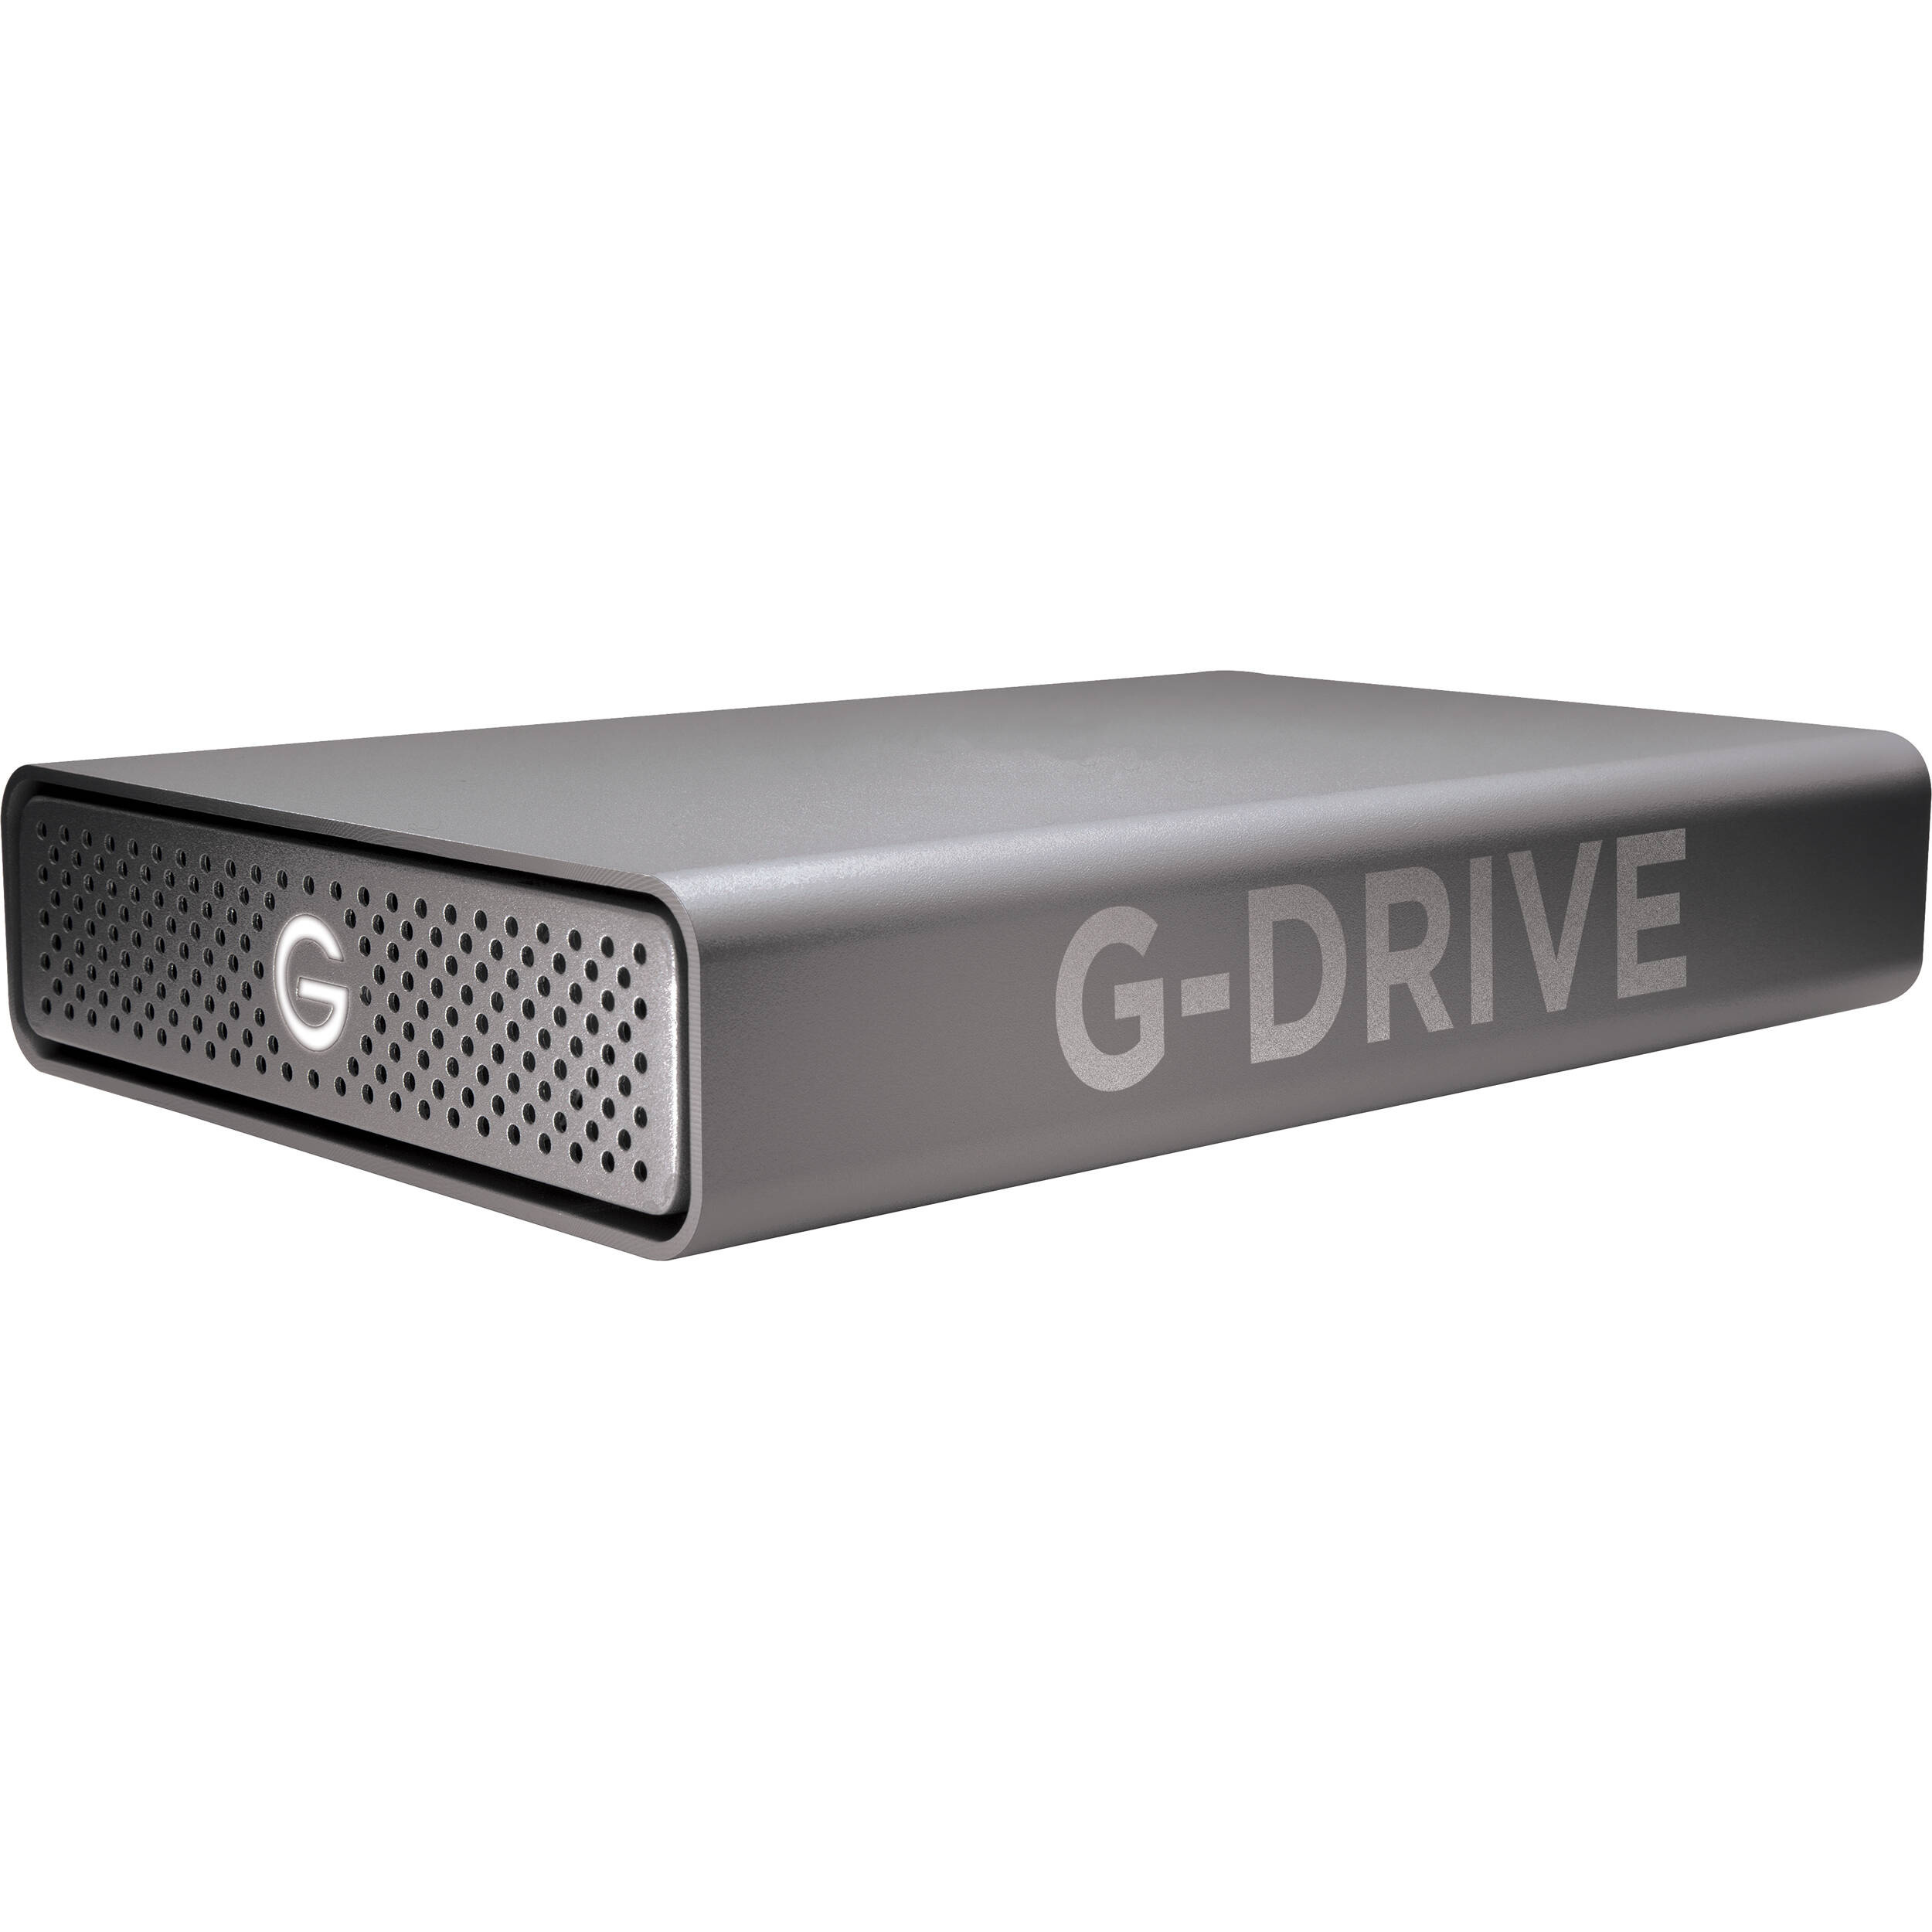 SanDisk Professional 4TB G-DRIVE Enterprise-Class USB 3.2 Gen 1 External Hard Drive